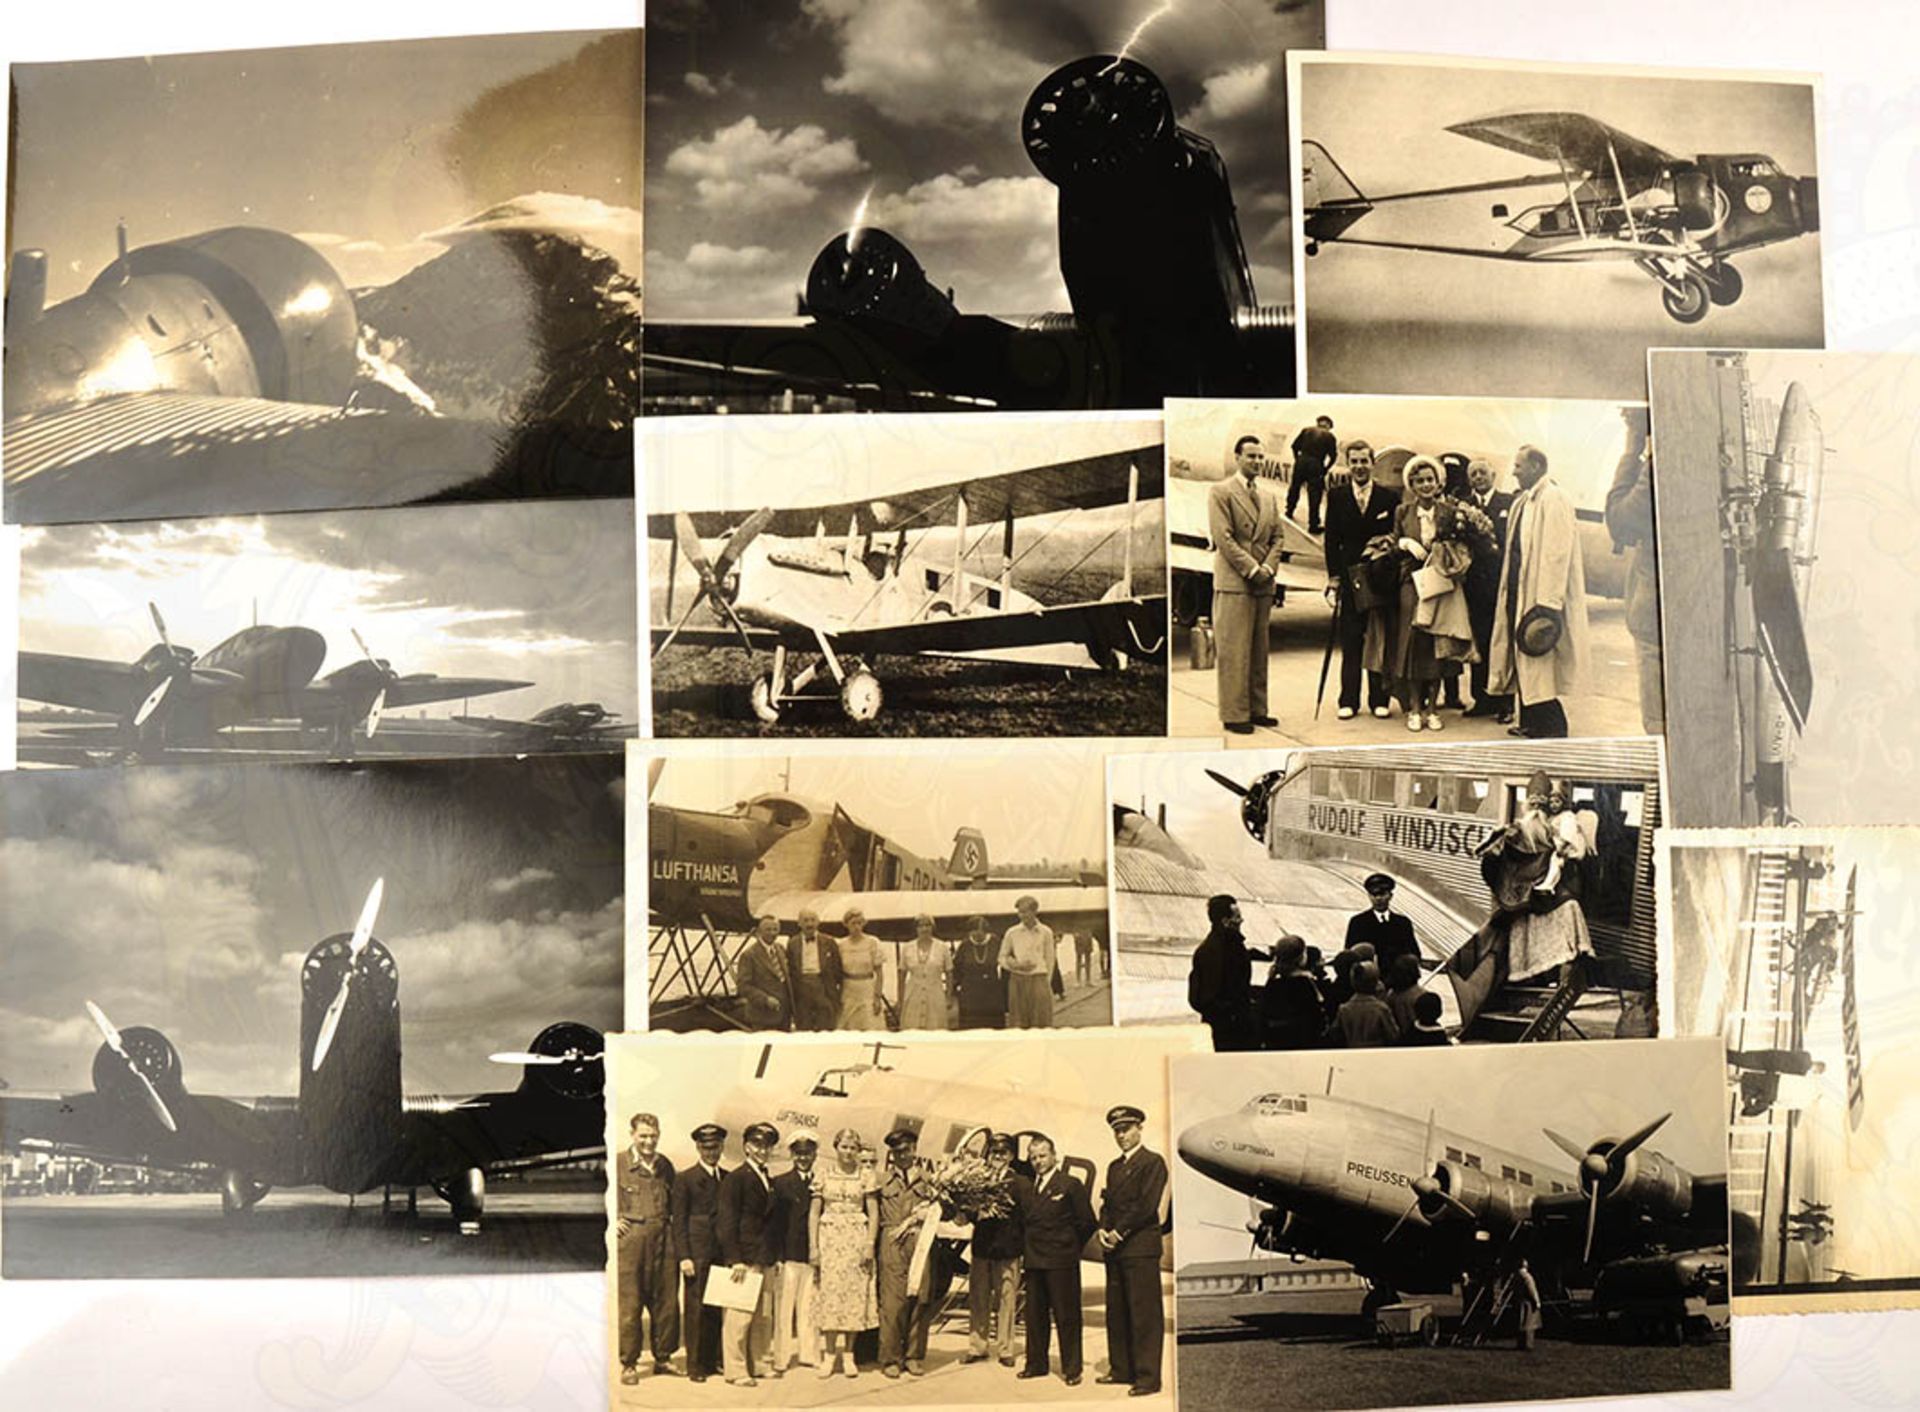 13 FOTOS DEUTSCHE LUFTHANSA, Ju 52, He 111, Ju 90 "Preussen", (verunglückt 1938 in Bathurst), tls.